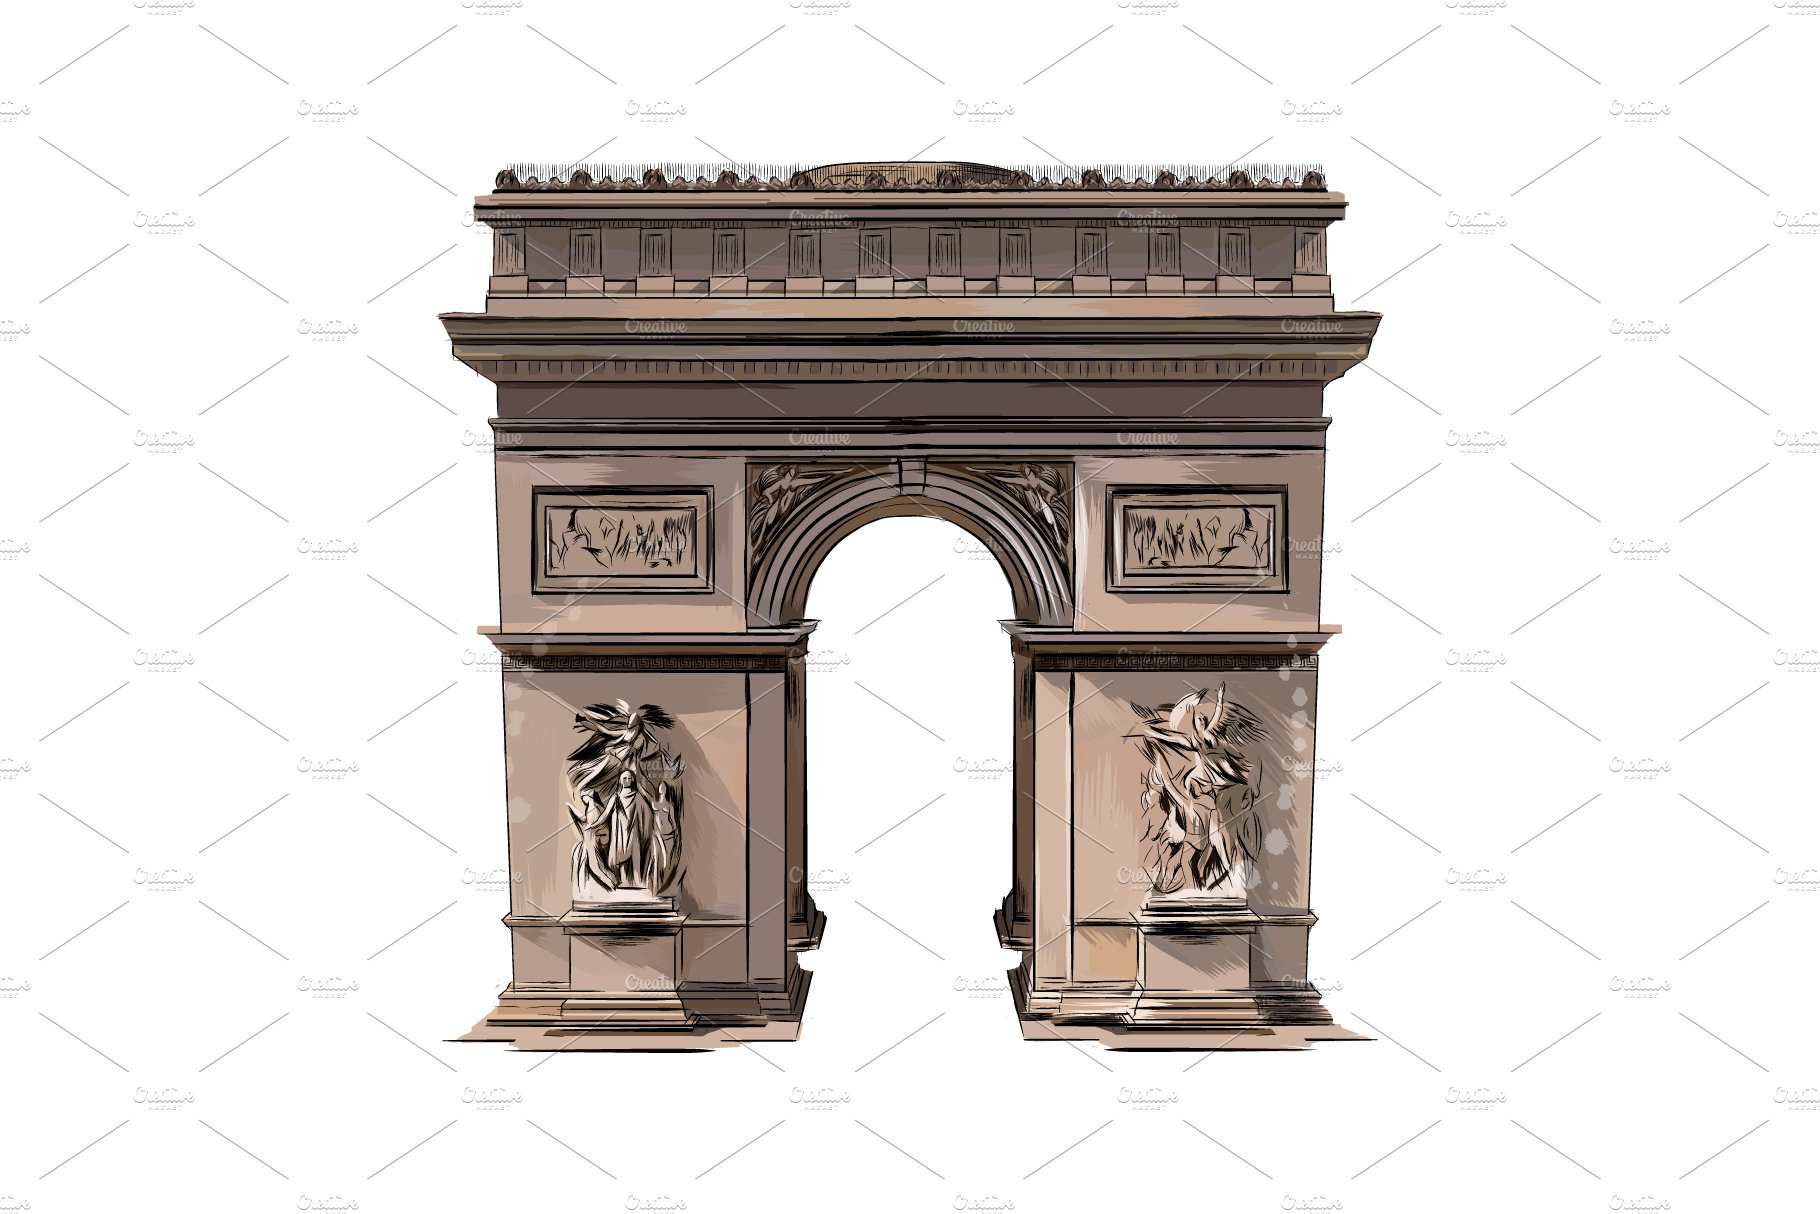 Paris Triumphal Arch cover image.